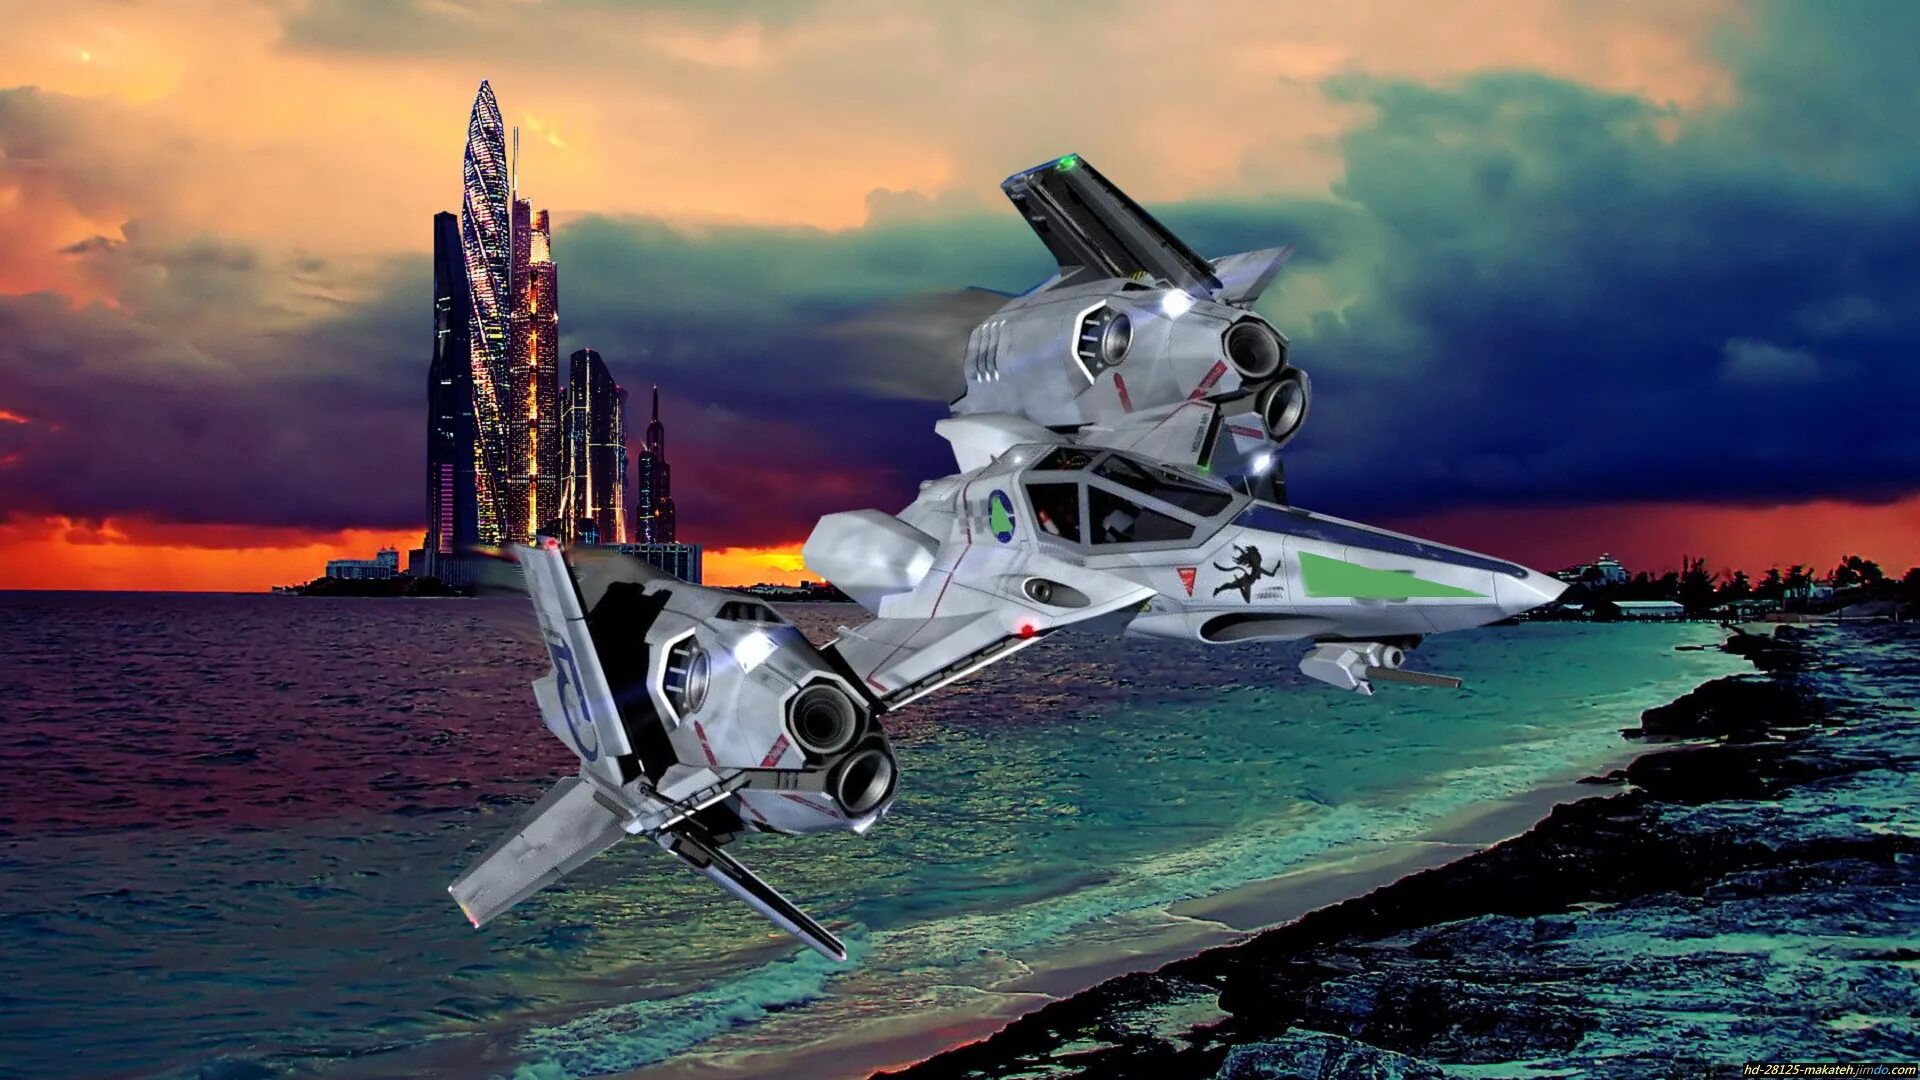 Космическая техника будущего. Стелс космический корабль будущего. Космический корабль Орленок. Космический истребитель. Космические корабли фантастика.